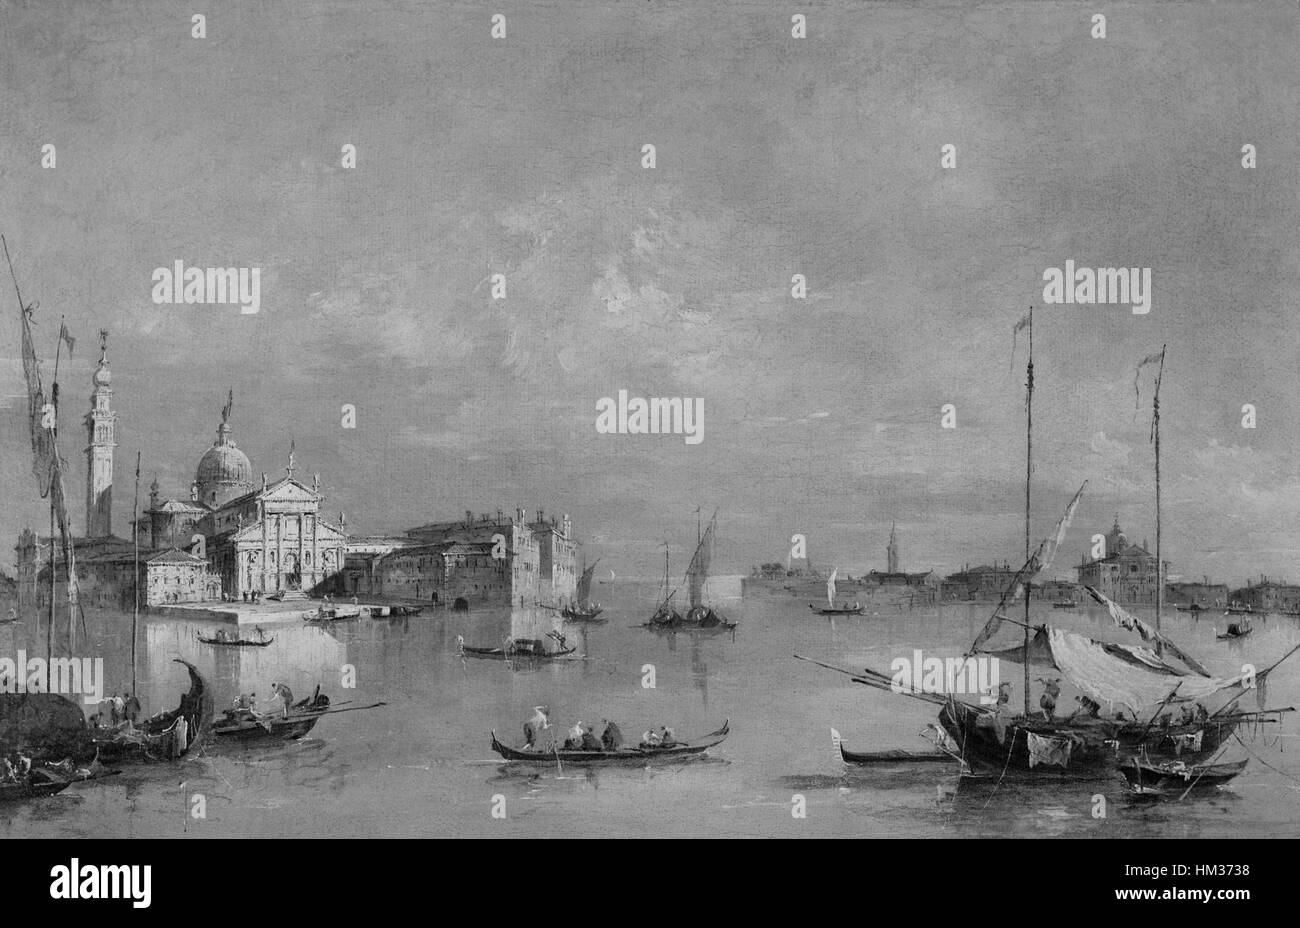 Francesco Guardi - Isola di S. Giorgio Maggiore, Venice - Frick Collection Stock Photo